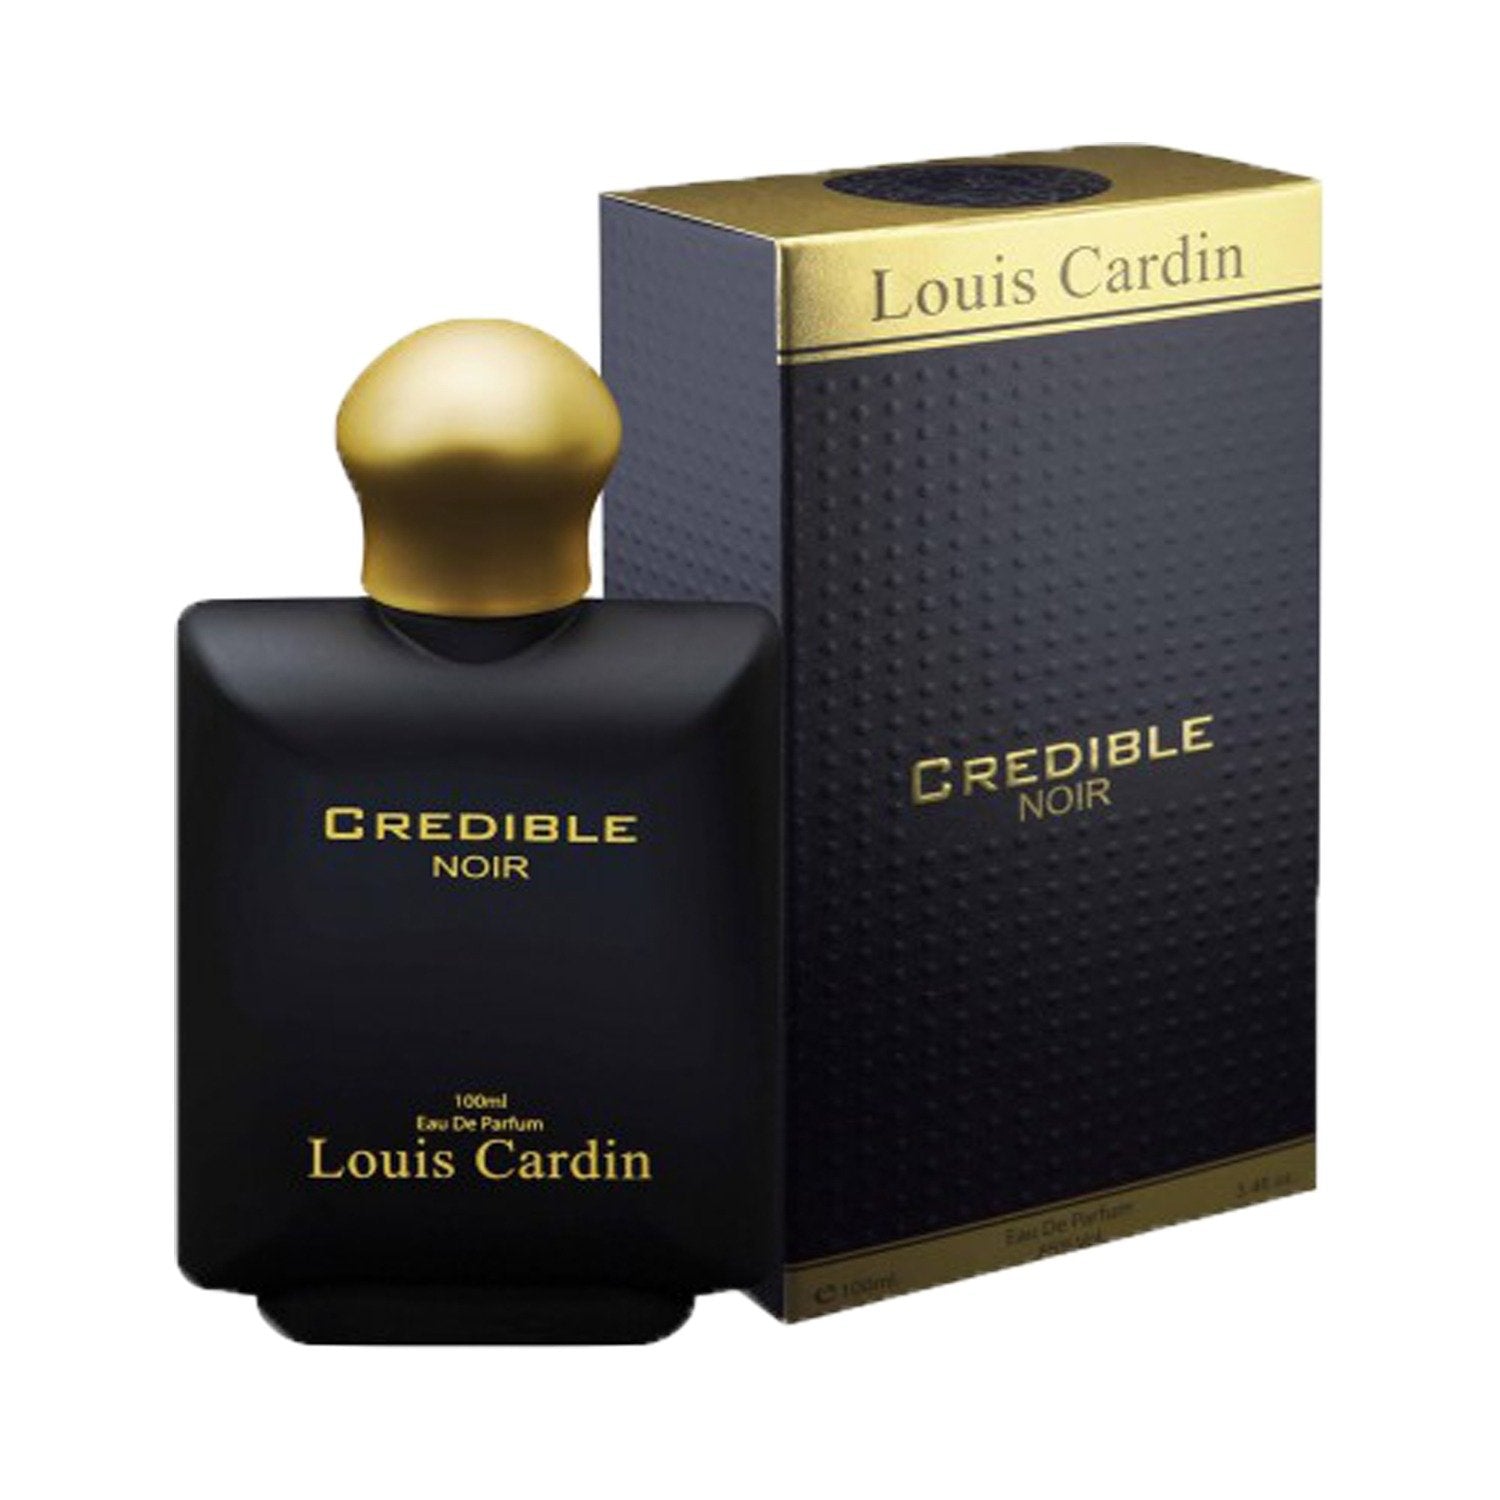 Louis Cardin Credible Noire Eau De Parfum for Men & Women